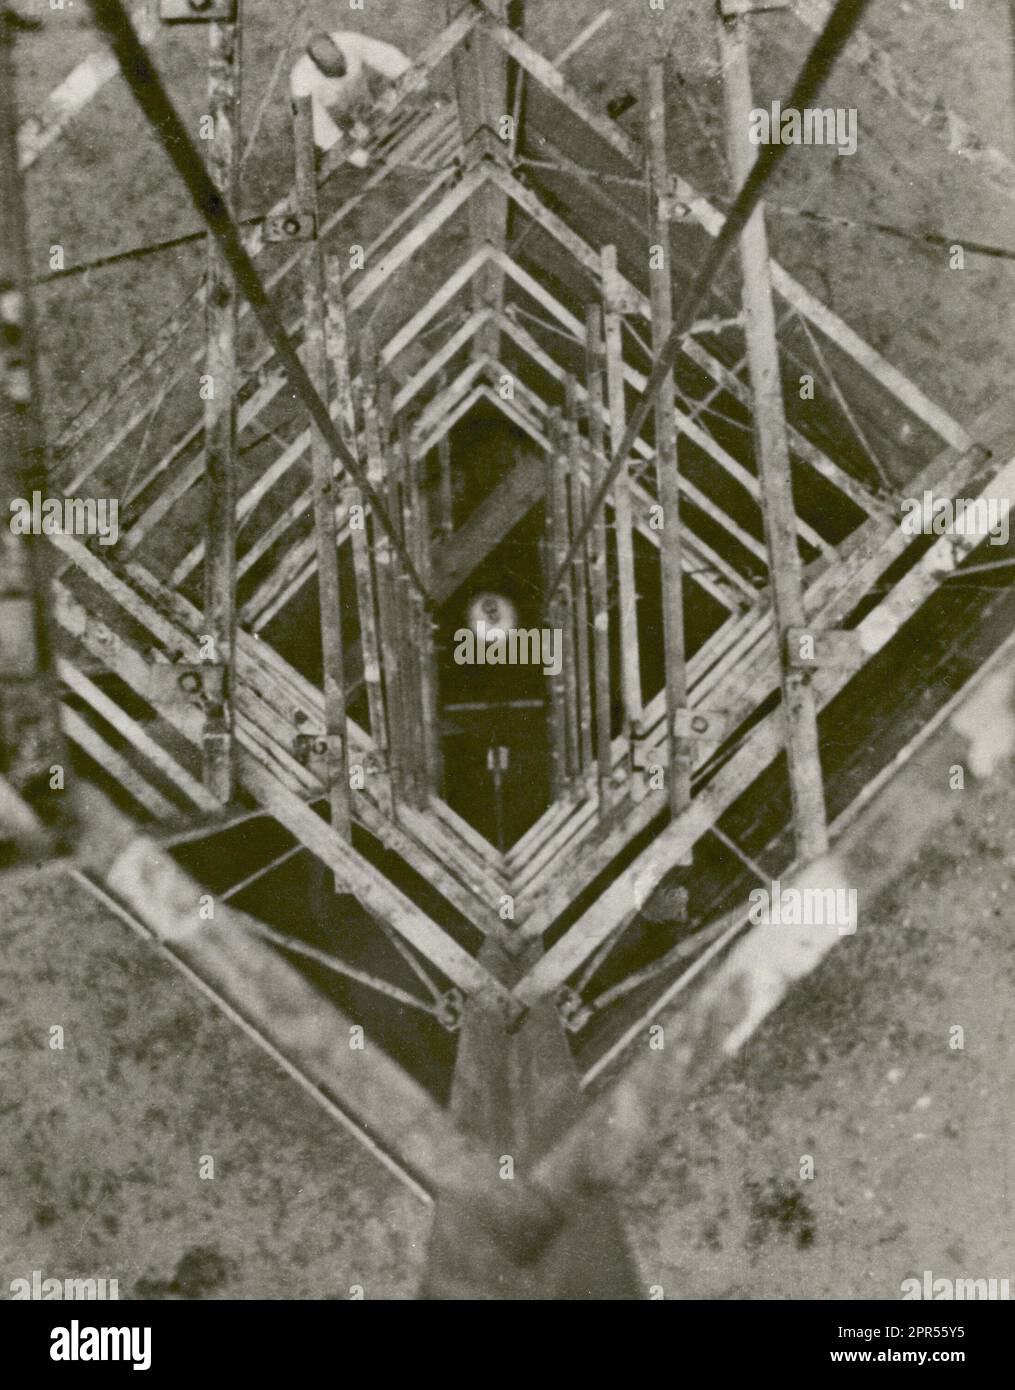 El Coronel Charles A. Lindbergh tomó esta fotografía del cohete del Dr. Robert H. Goddard mirando hacia abajo la torre de lanzamiento el 23 de septiembre de 1935 en Roswell, Nuevo México. En 1935 Goddard lanzó la serie A de pruebas sobre cohetes hechos con voladura de voladura girocontrolada, que estabilizó el cohete durante el vuelo. El Dr. Goddard ha sido reconocido como el padre de la roca americana y como uno de los pioneros en la exploración teórica del espacio. Su sueño fue la conquista de la atmósfera superior y, en última instancia, del espacio mediante el uso de la propulsión de cohetes. Cuando los Estados Unidos comenzaron a prepararse para la conquista Foto de stock